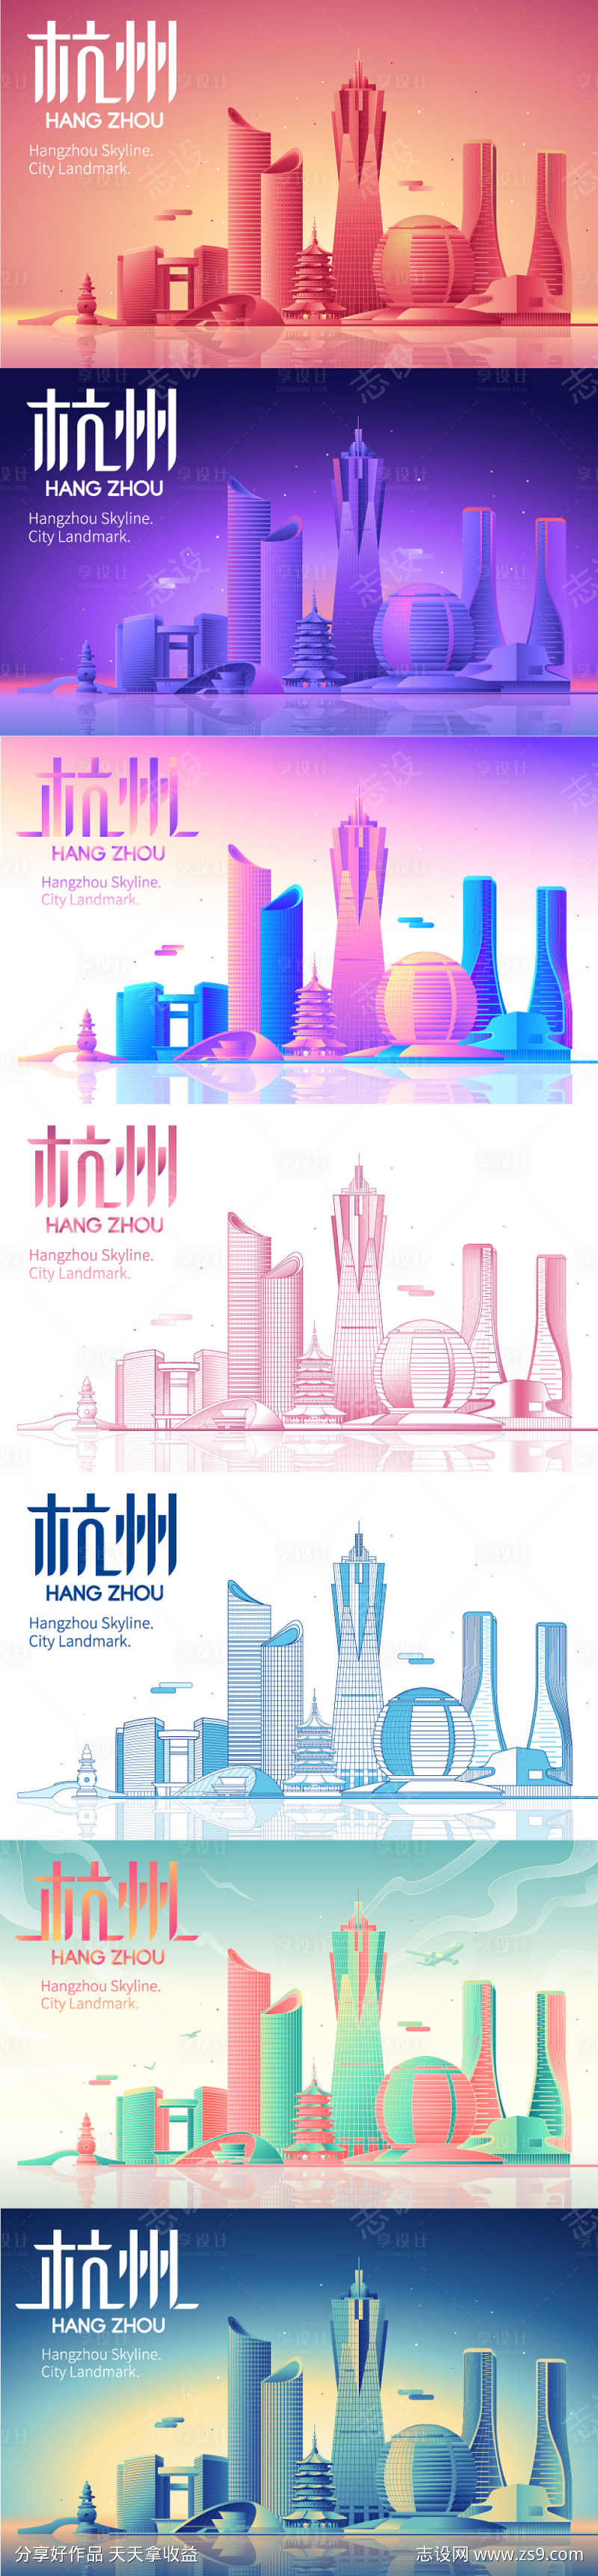 杭州地标建筑 杭州城市插画